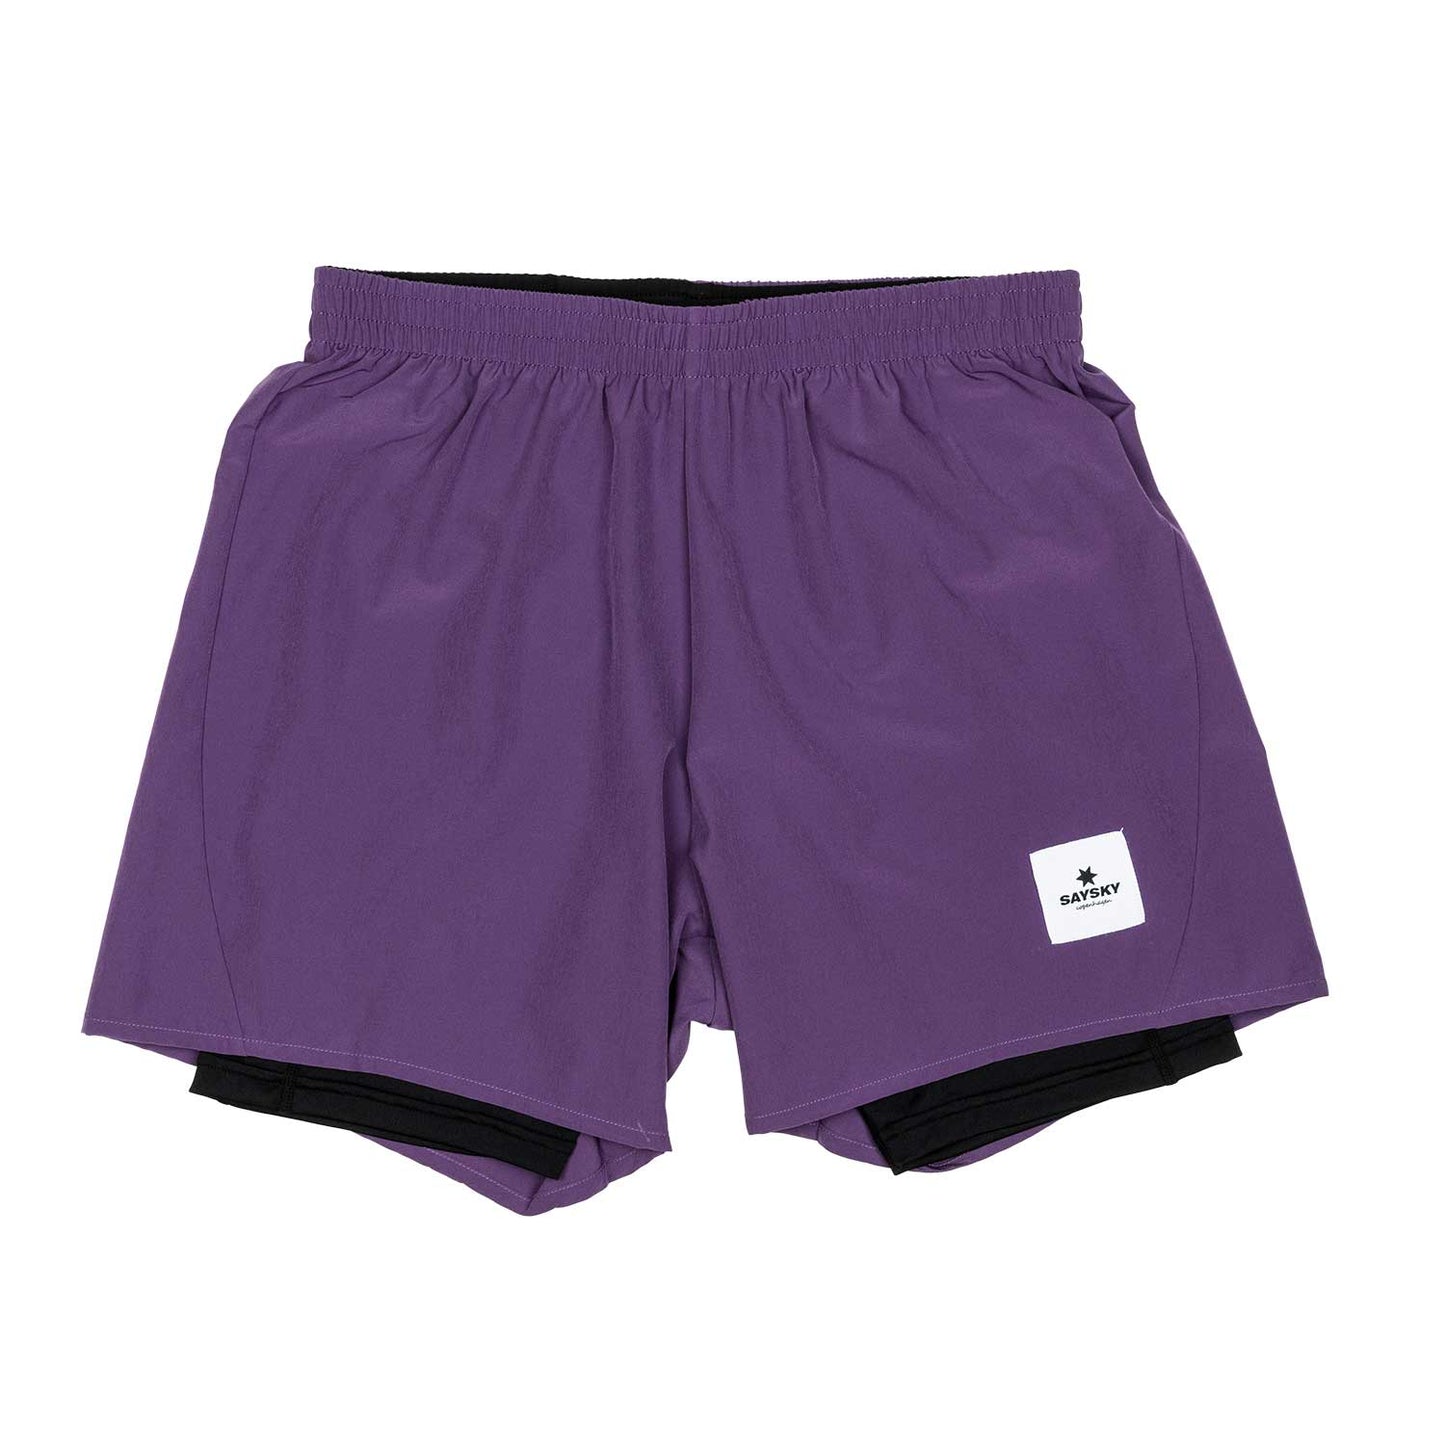 ランニングショーツ GMRSH05 2-in-1 Shorts - Loganberry Purple [ユニセックス]